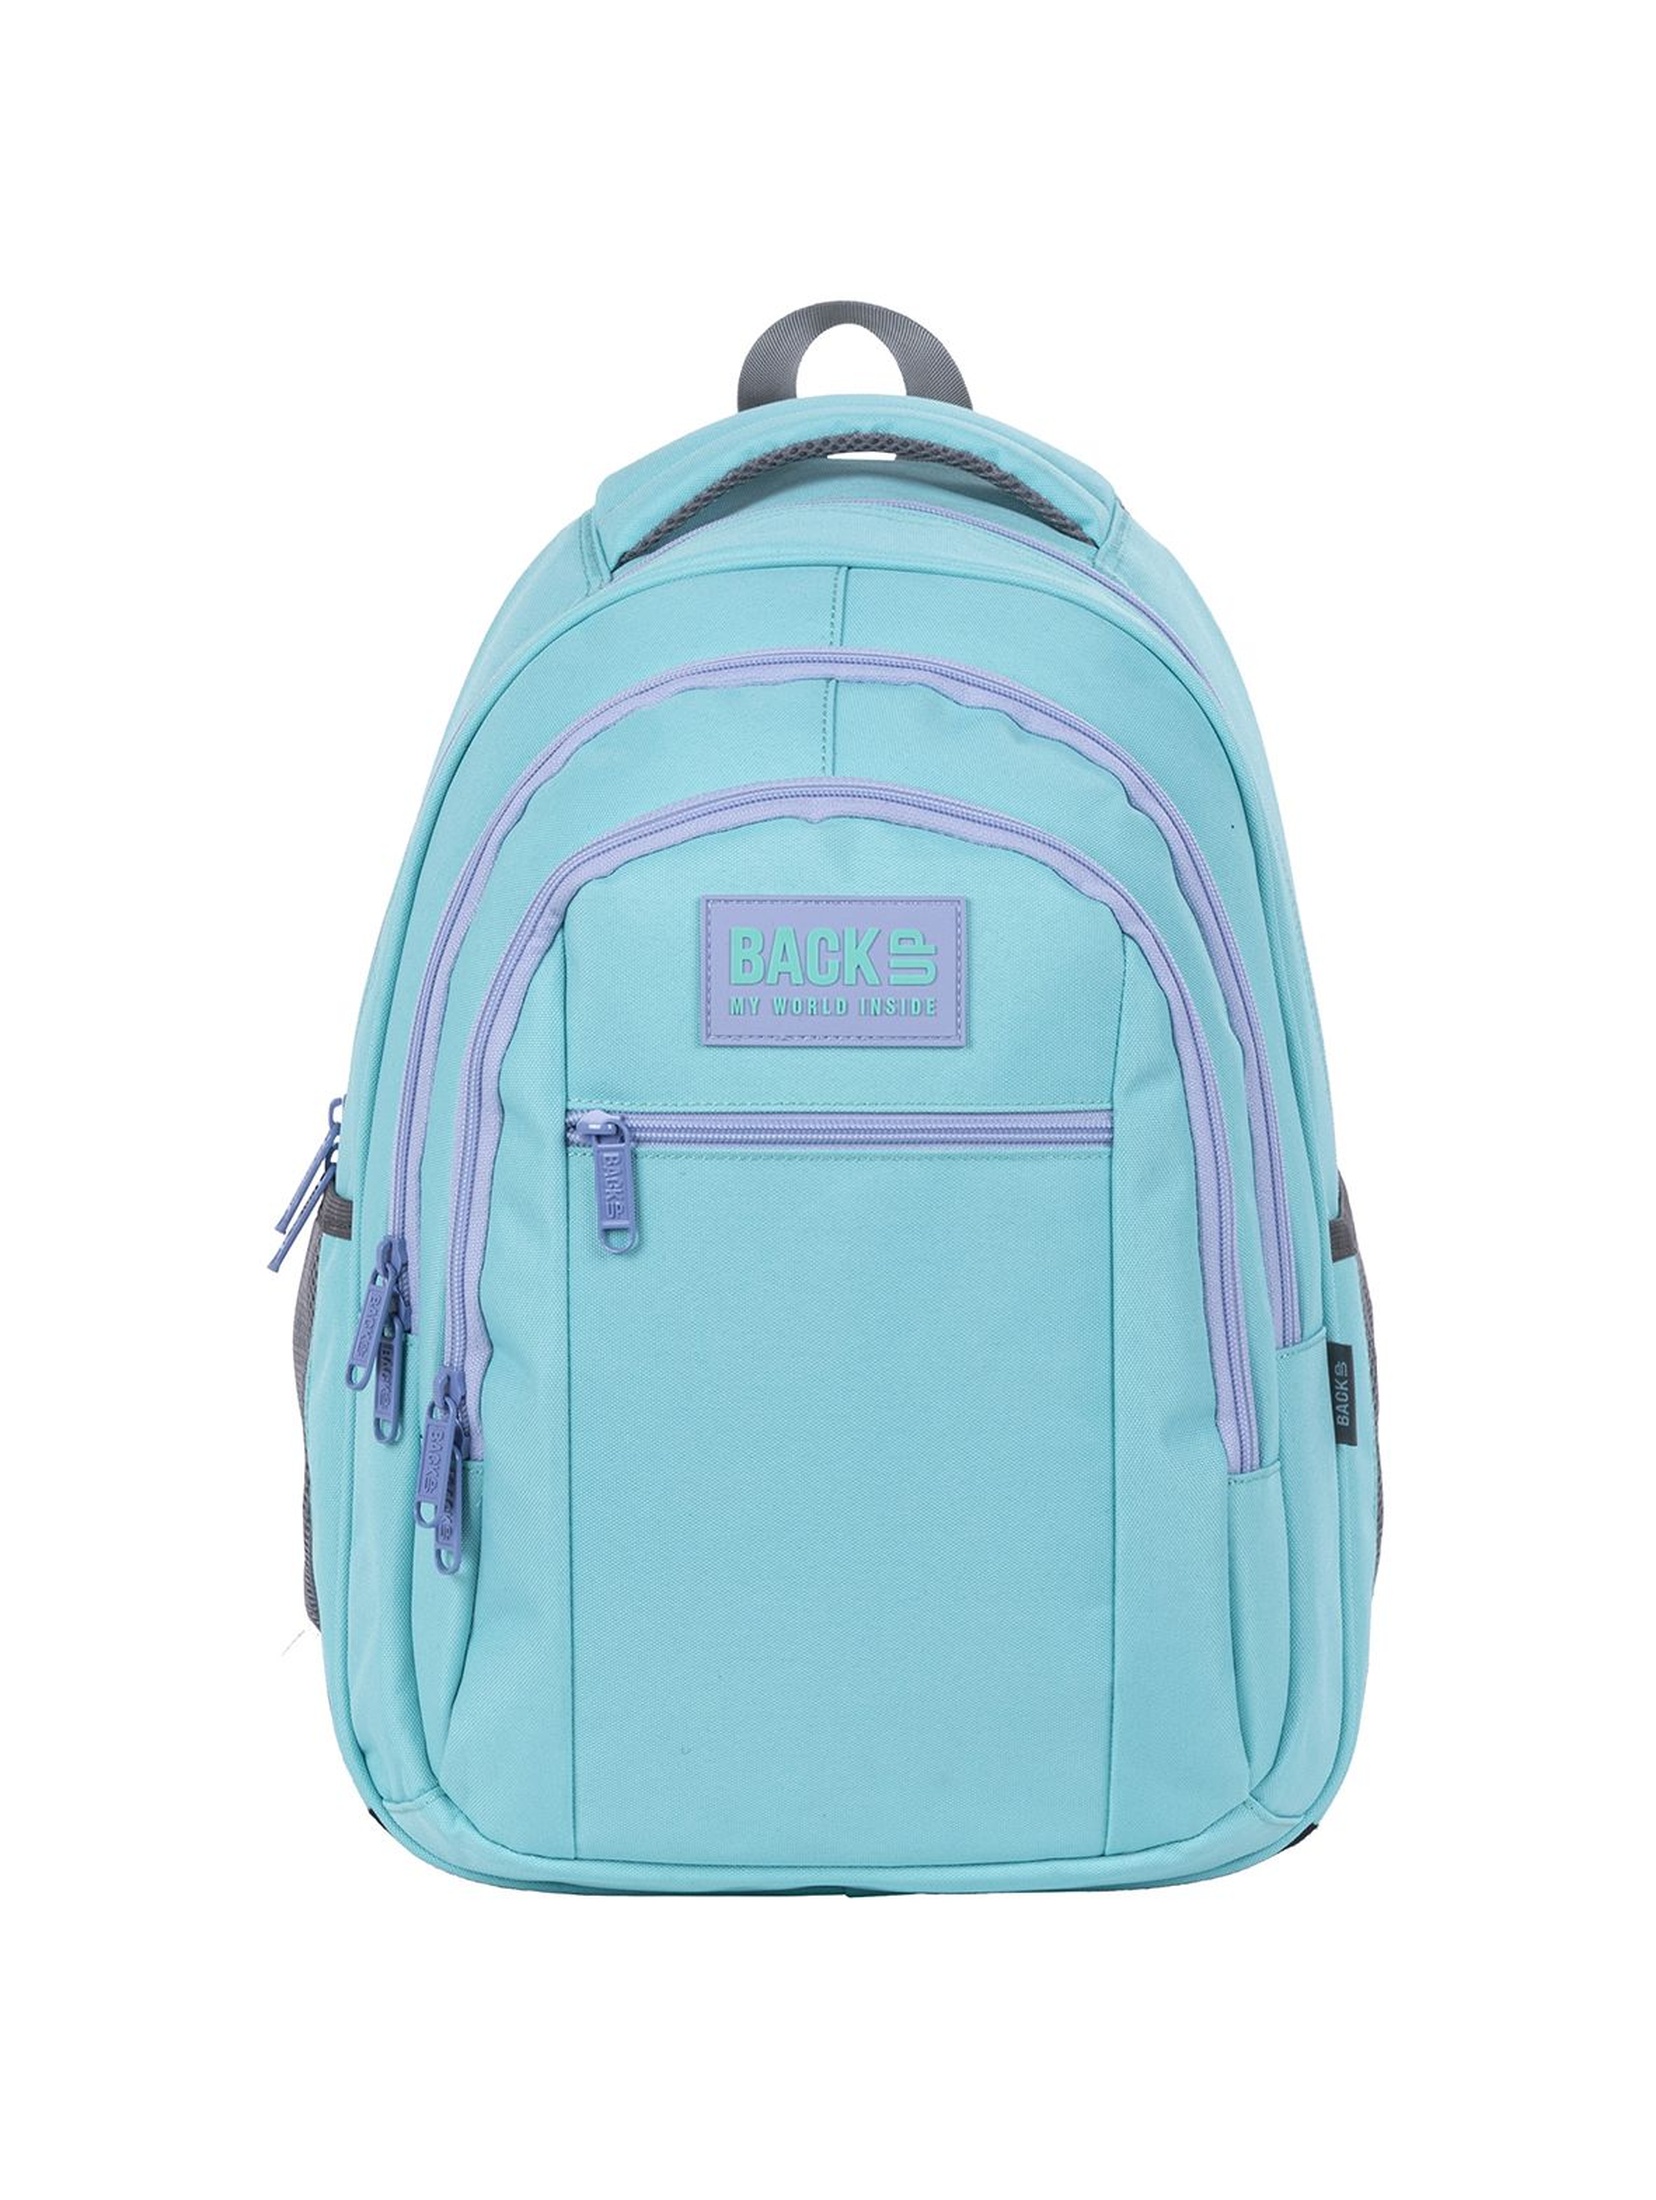 Plecak szkolny BackUp dziewczęcy niebieski